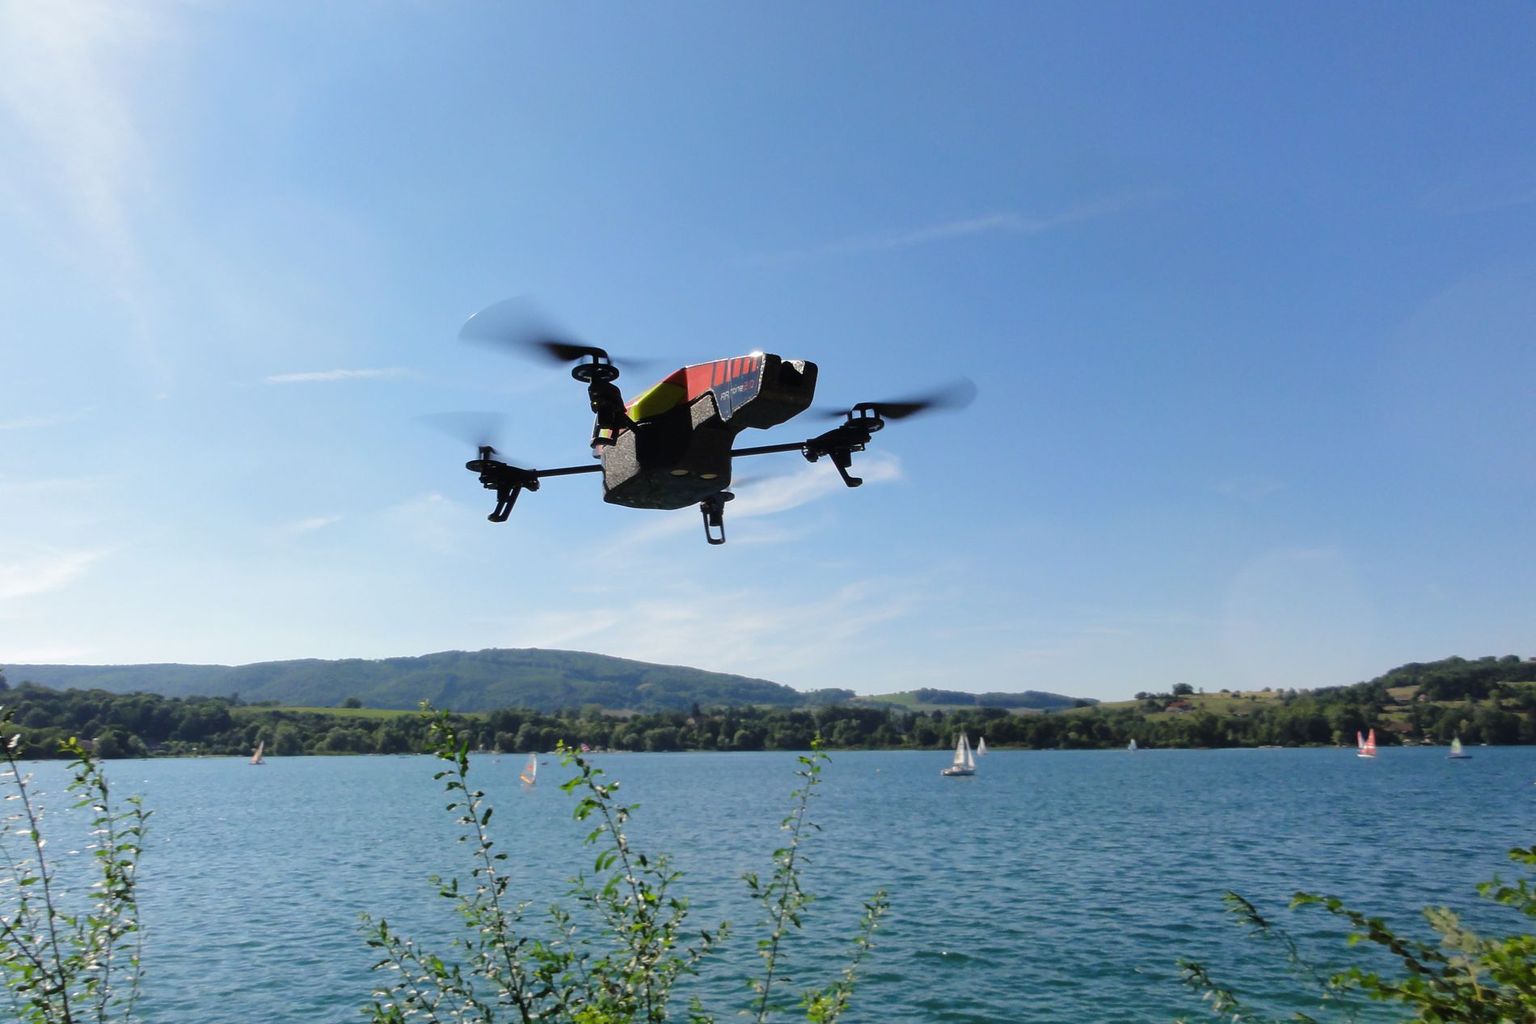 L'utlisation d'une drone à proximité d'un lac